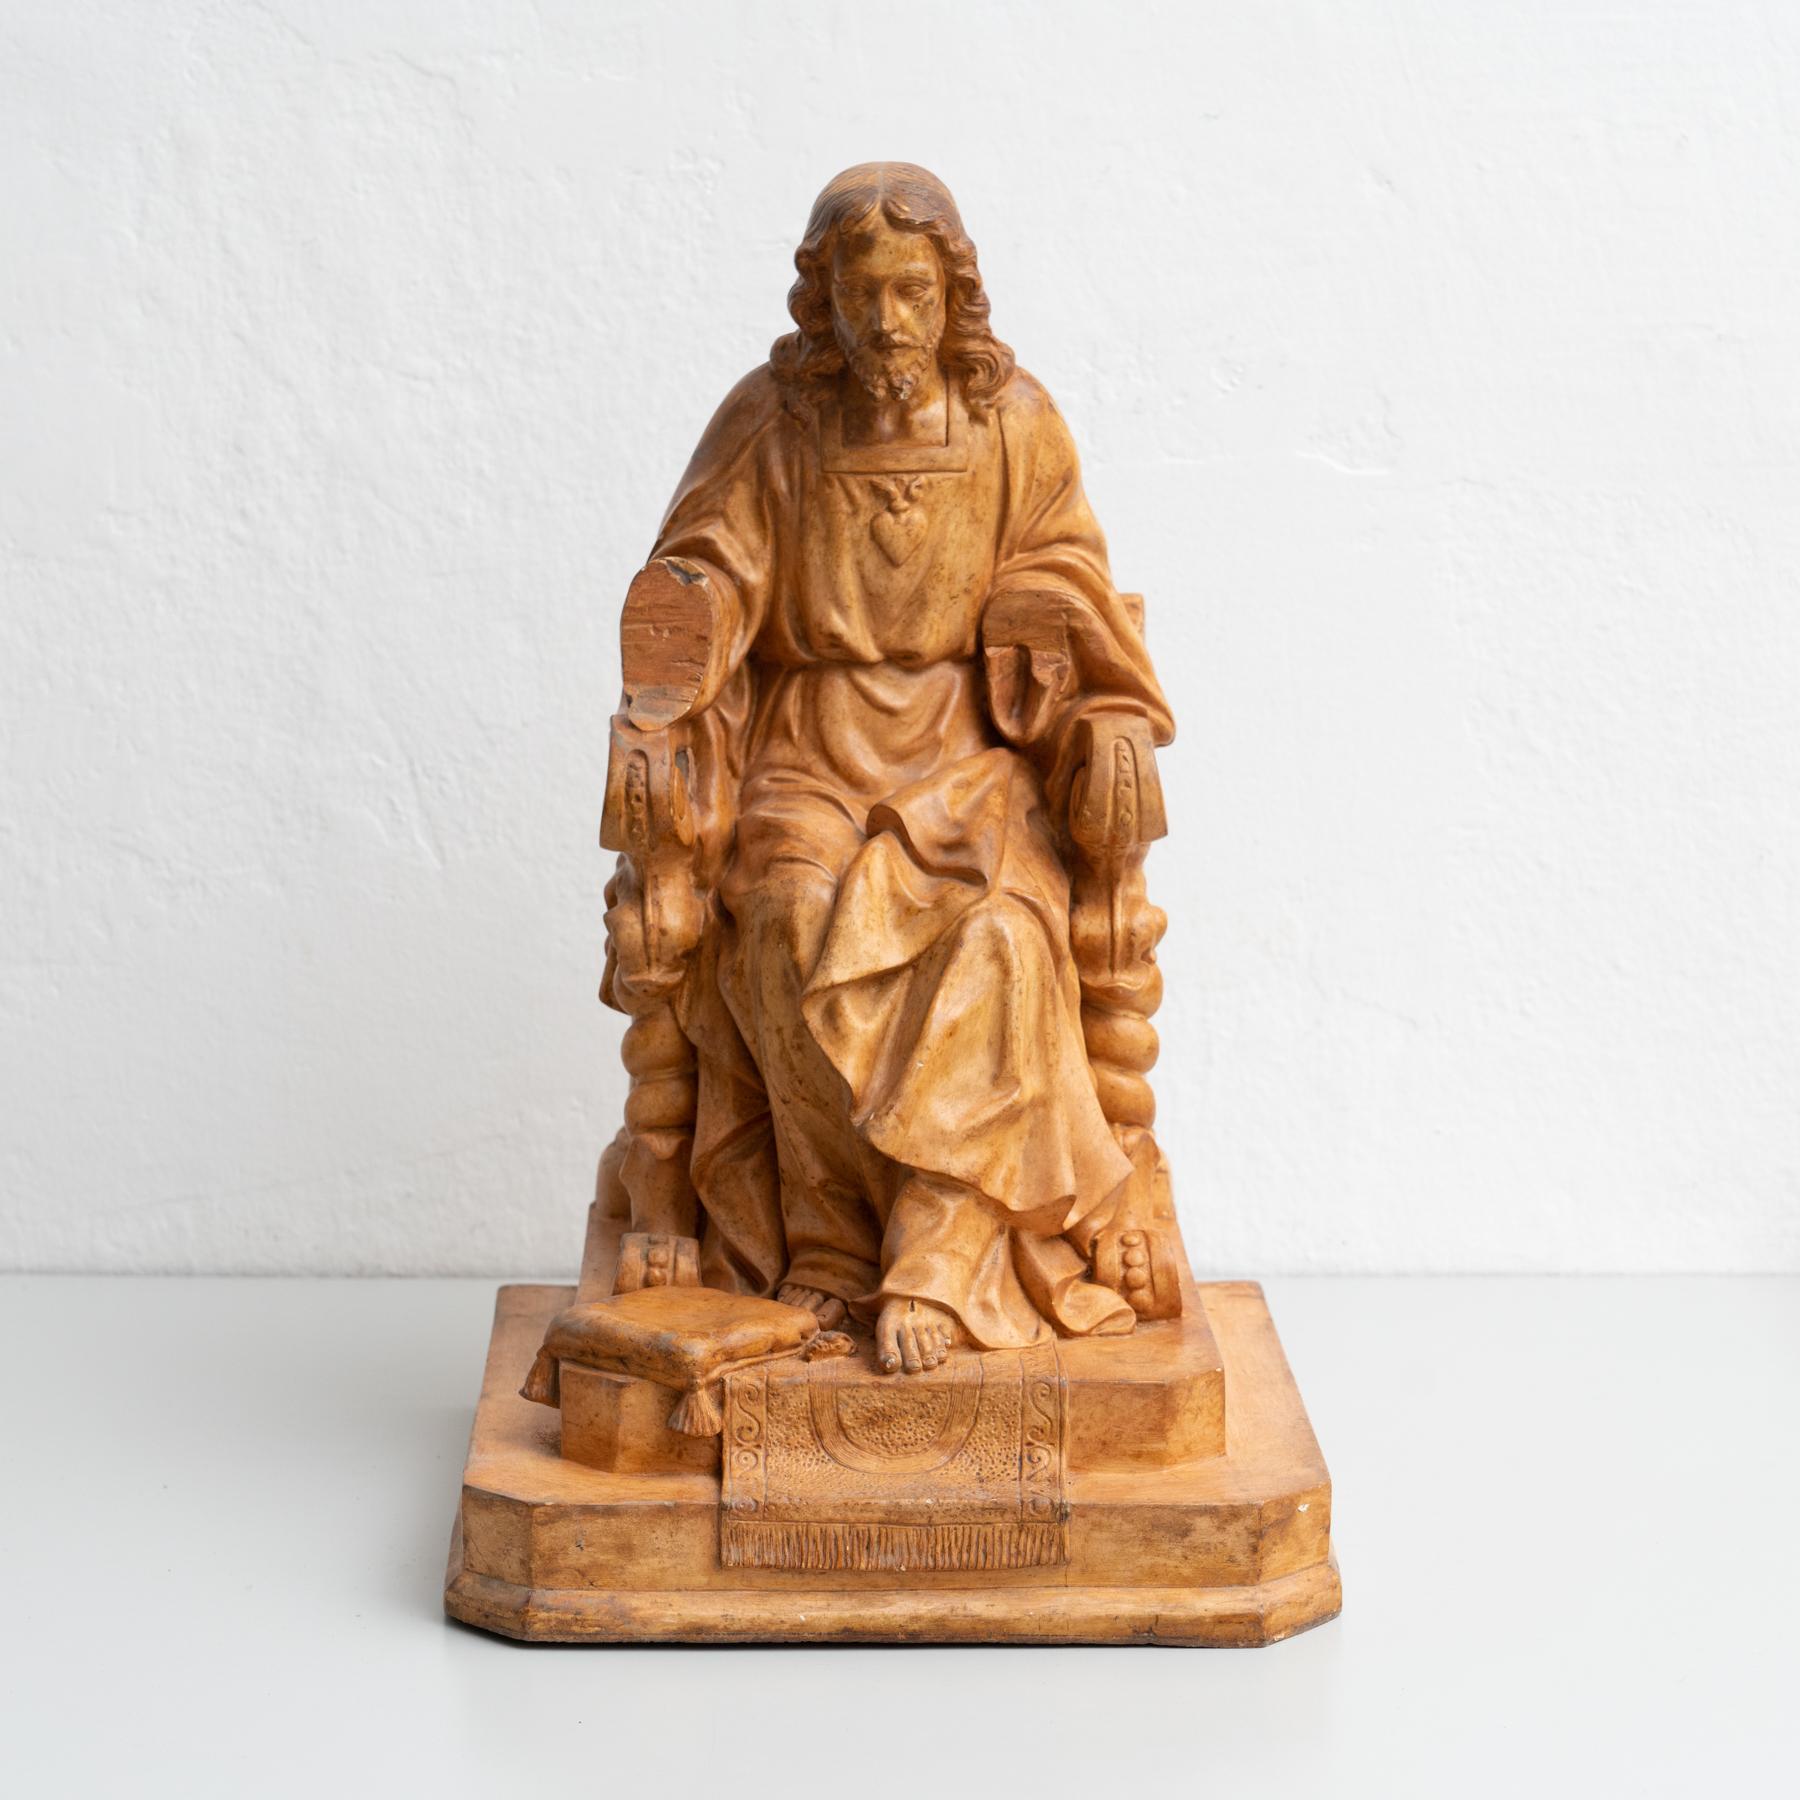 Mitte des 20. Jahrhunderts gedrehte Jesus Christus Figur aus Platin.

Hergestellt in Olot, Spanien.

Originaler Zustand mit geringen alters- und gebrauchsbedingten Abnutzungserscheinungen, der eine schöne Patina aufweist.
 